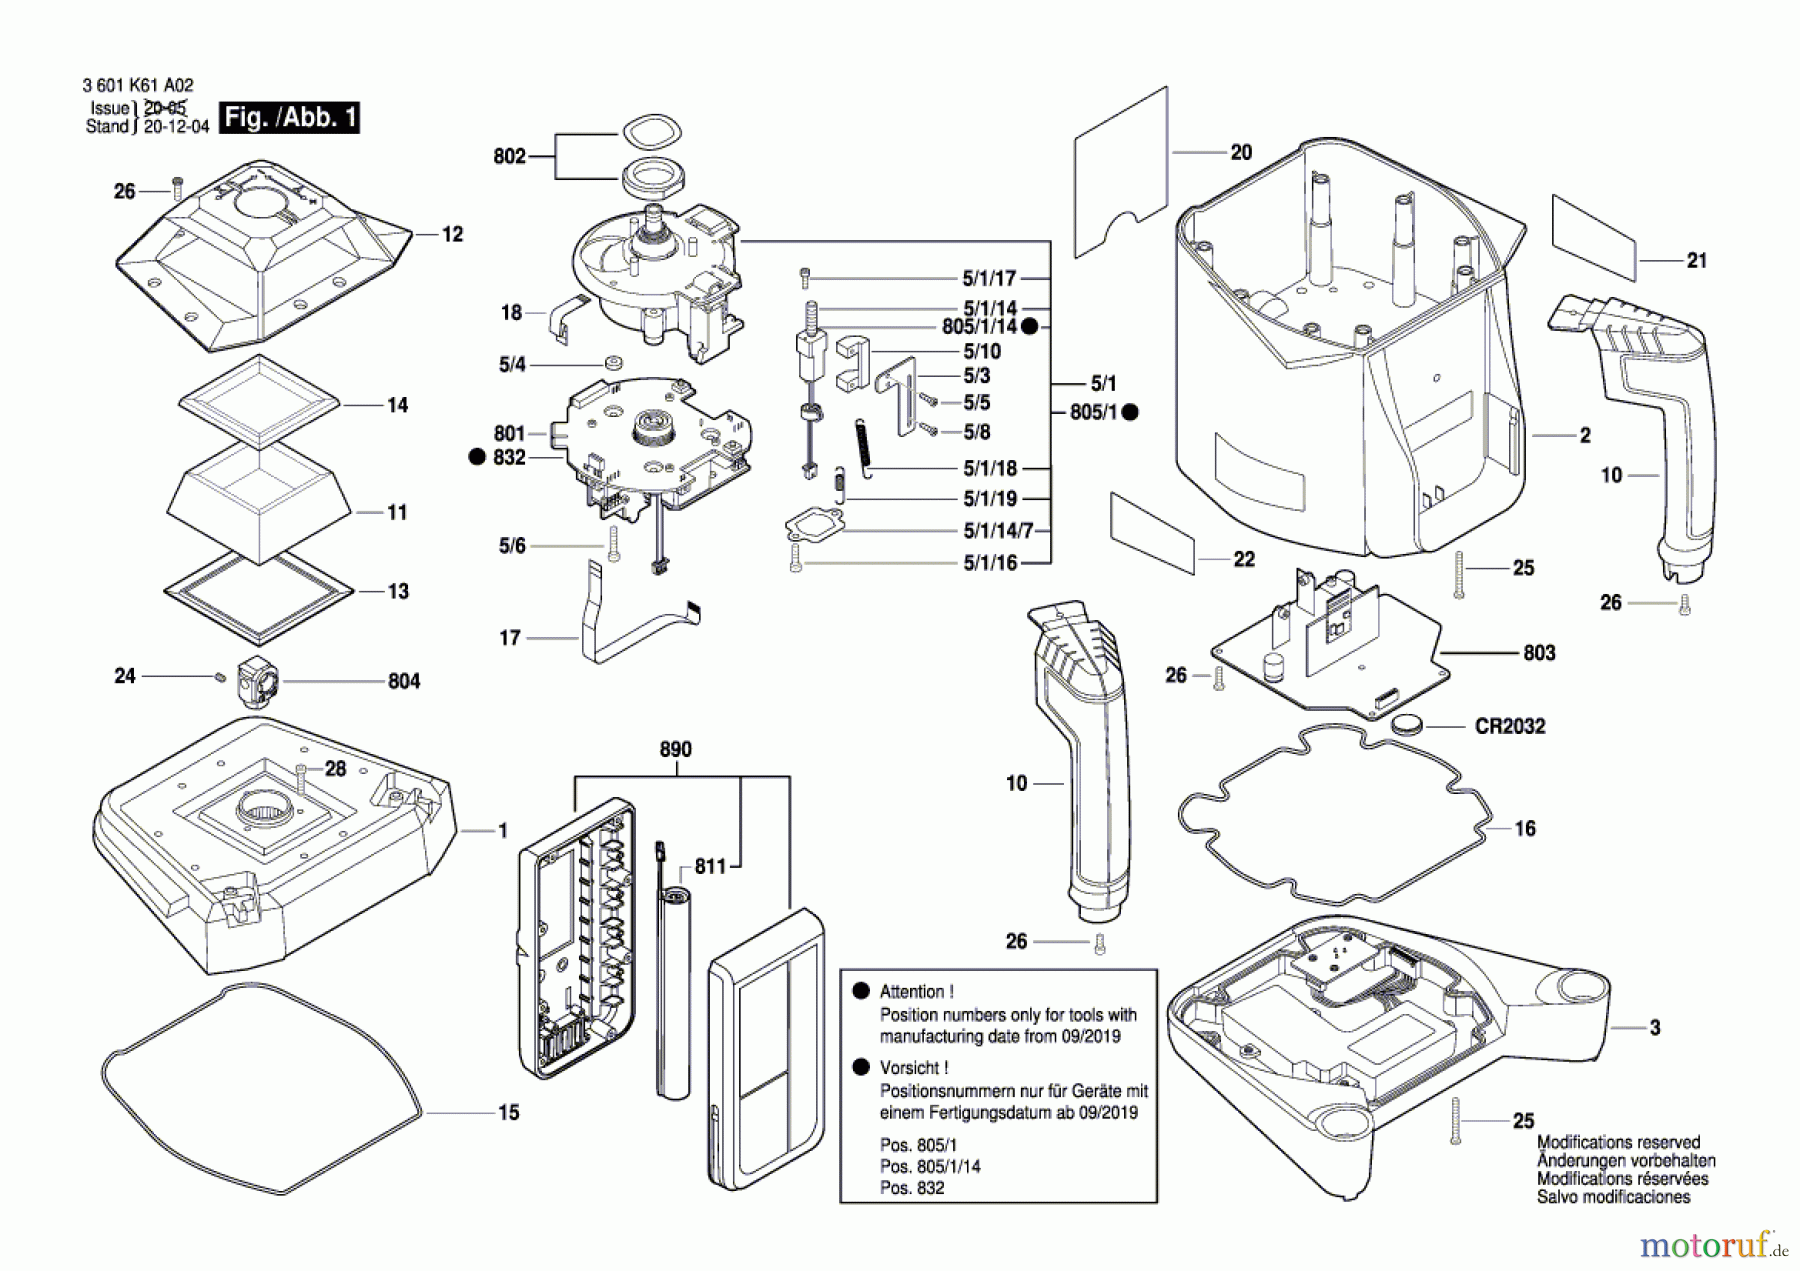  Bosch Werkzeug Baulaser GRL 500 HV Seite 1